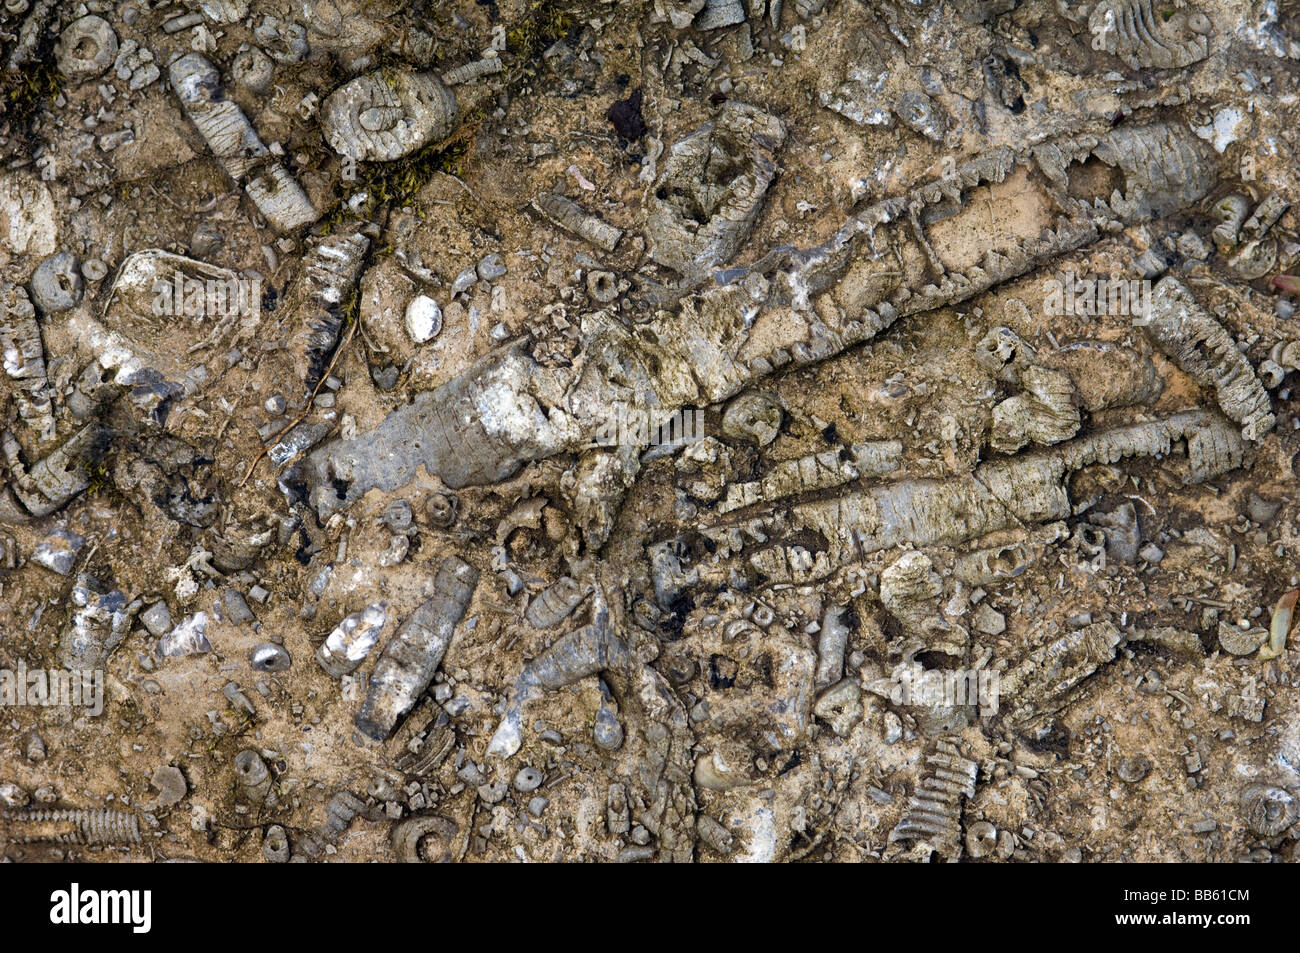 Los organismos marinos conservados en piedra caliza Foto de stock